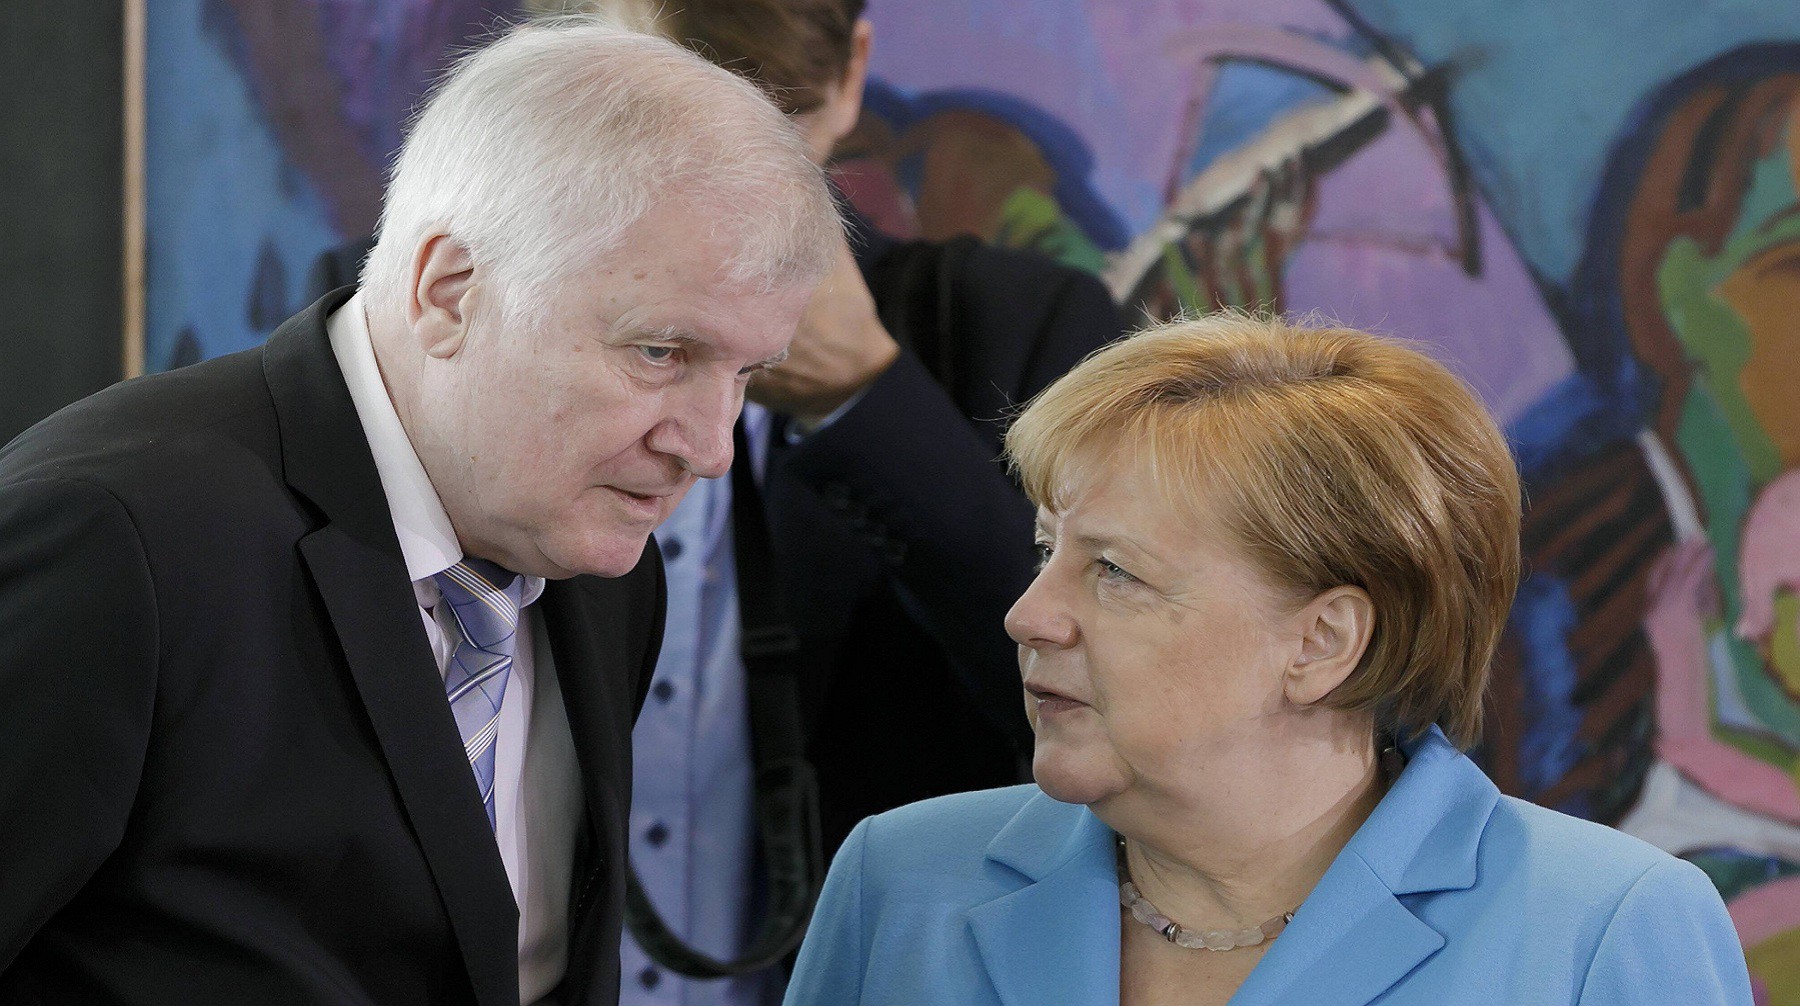 Dailystorm - Глава МВД Германии устал договариваться с Меркель